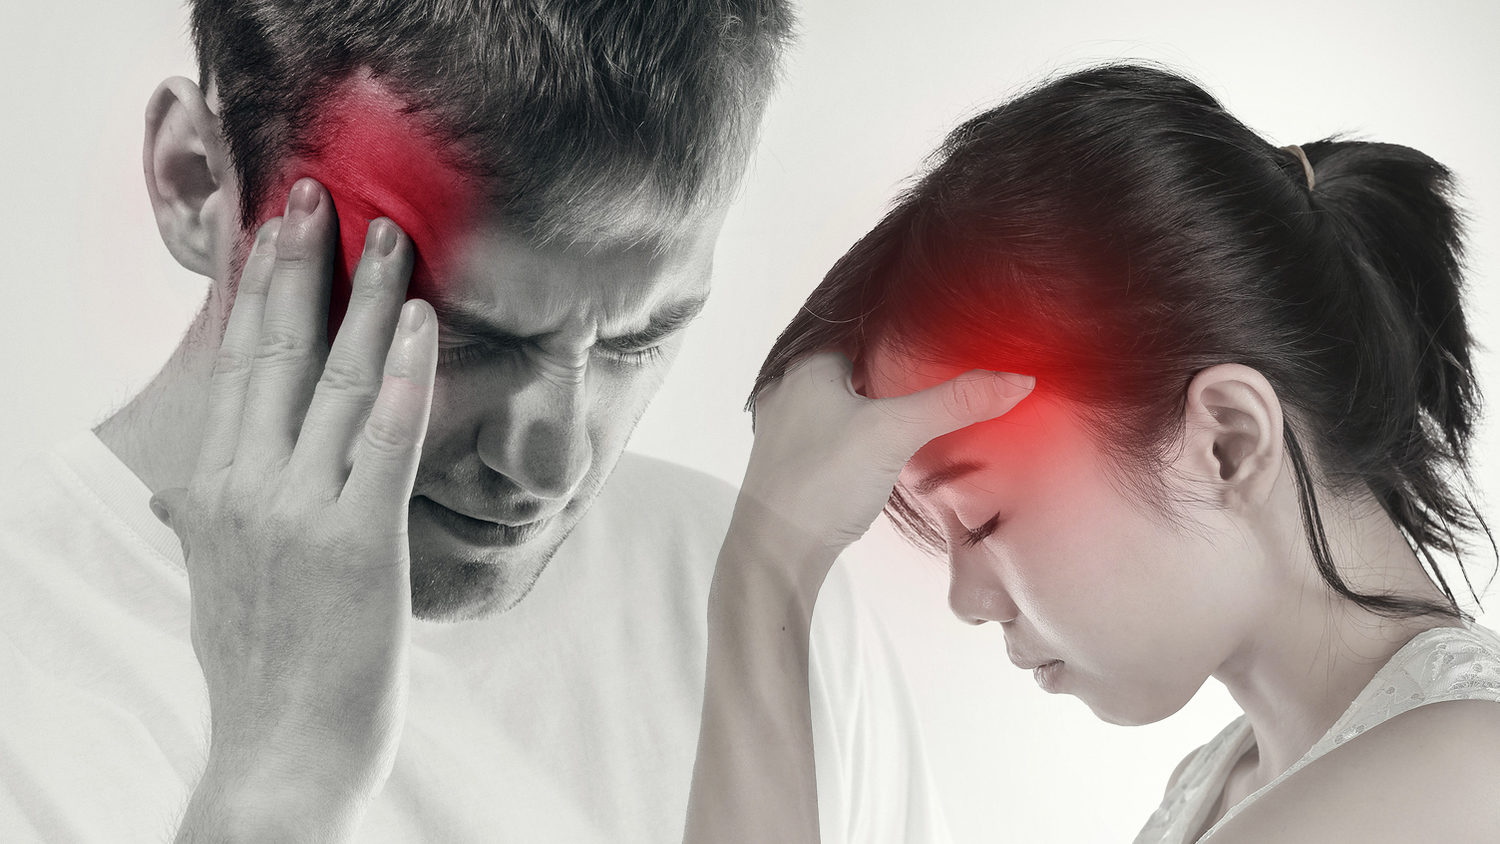 мужчина и женщина держатся рукой за свои головы и страдают от головной боли мигрени